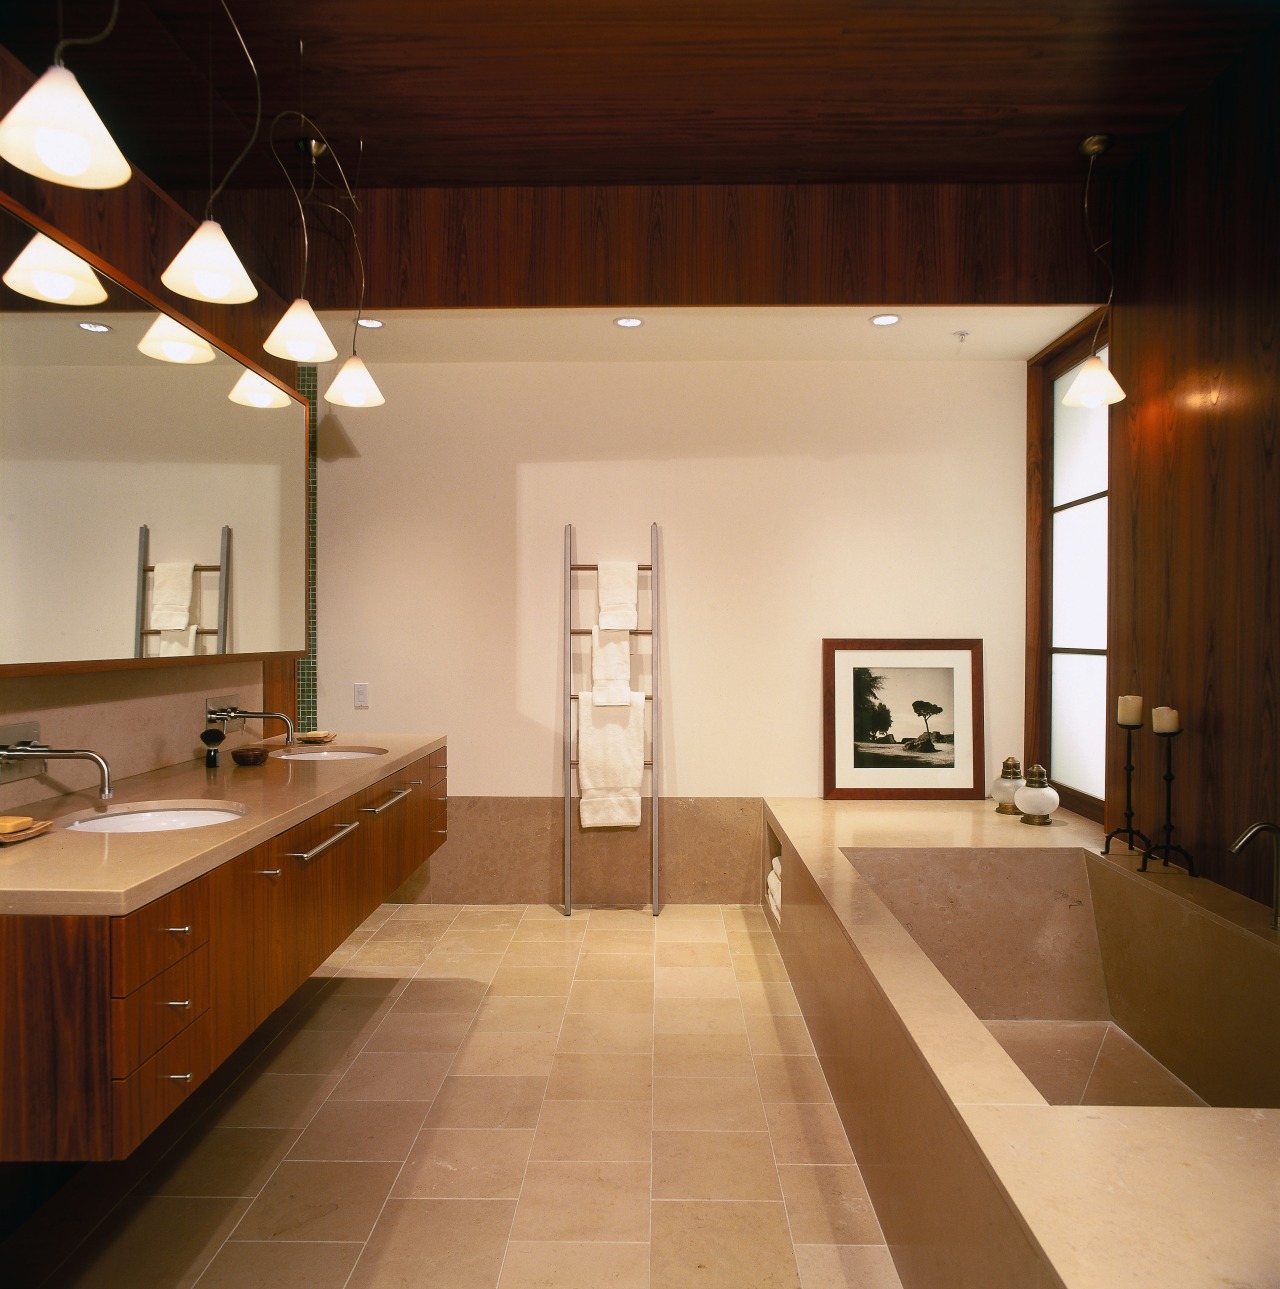 view of the bathroom featuring teak veneer vanity architecture, bathroom, ceiling, countertop, daylighting, floor, flooring, home, house, interior design, real estate, room, sink, orange, brown